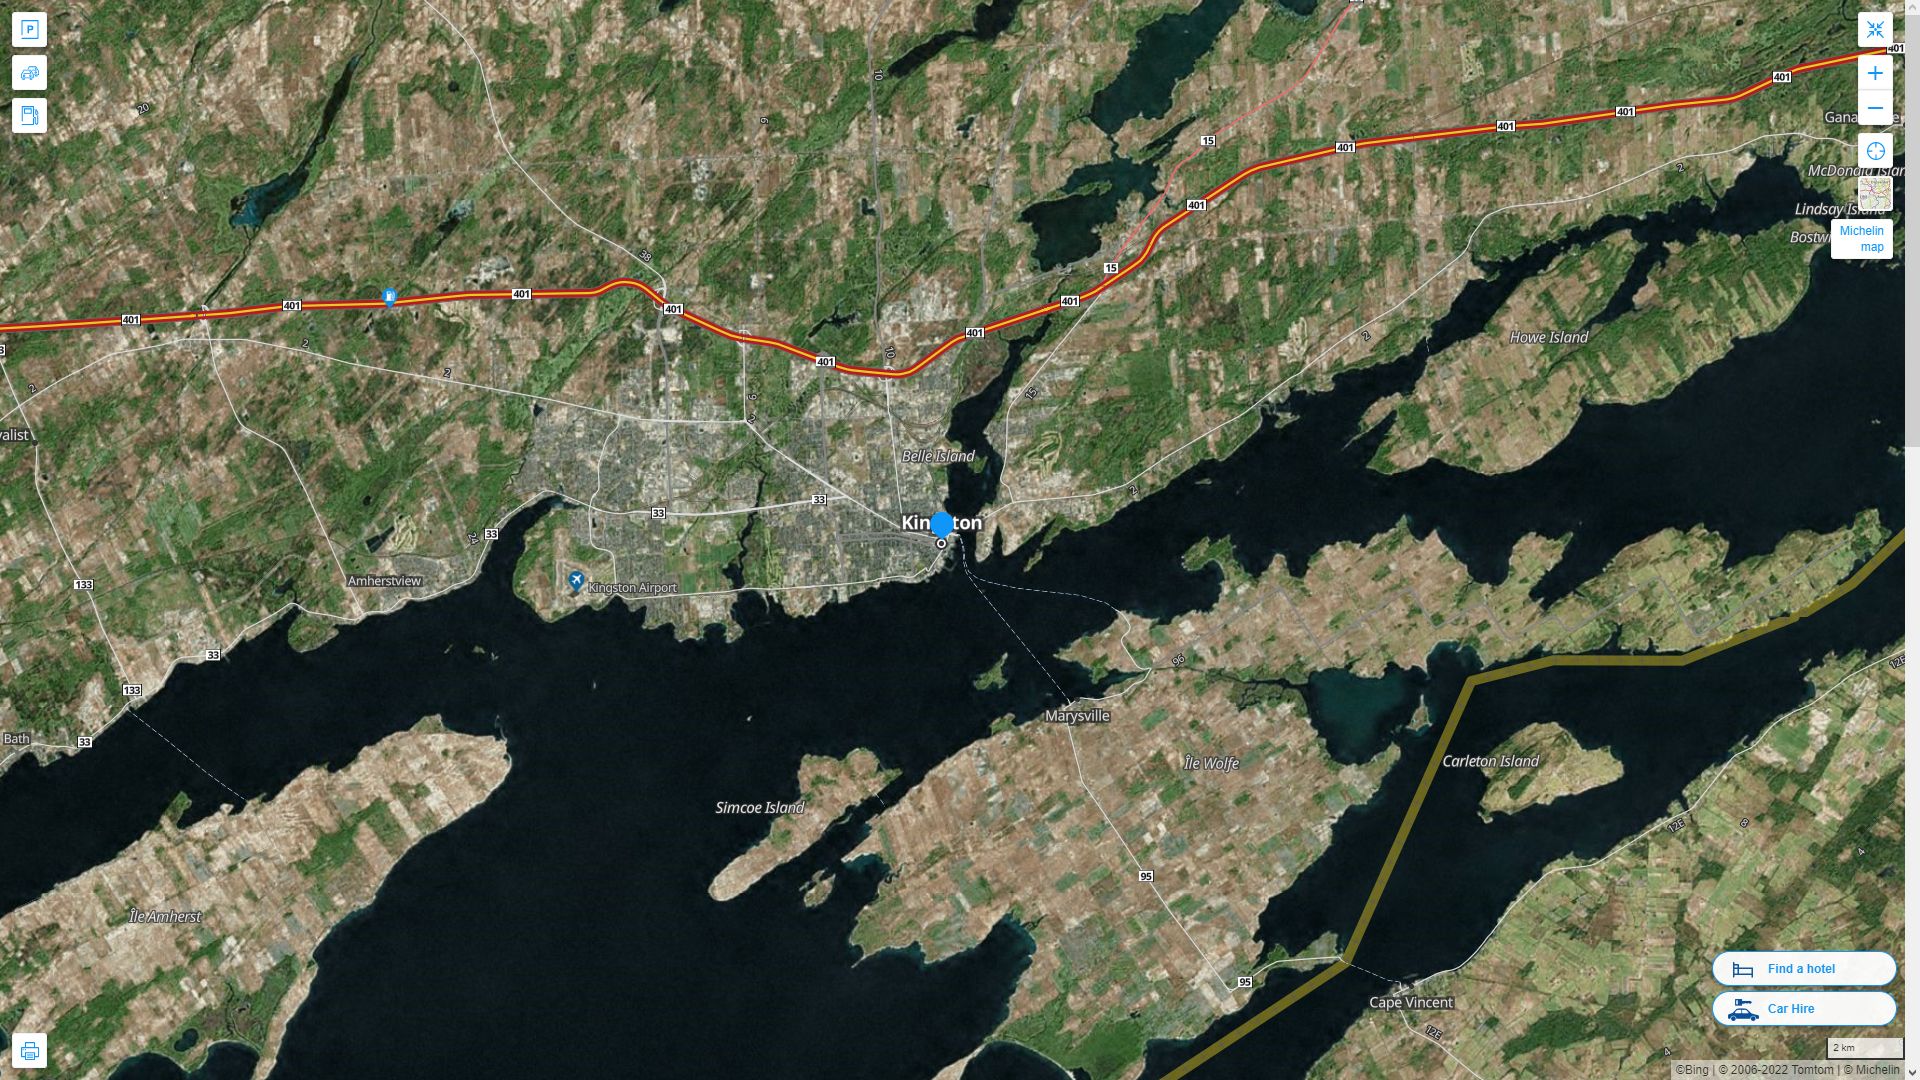 Kingston Canada Autoroute et carte routiere avec vue satellite